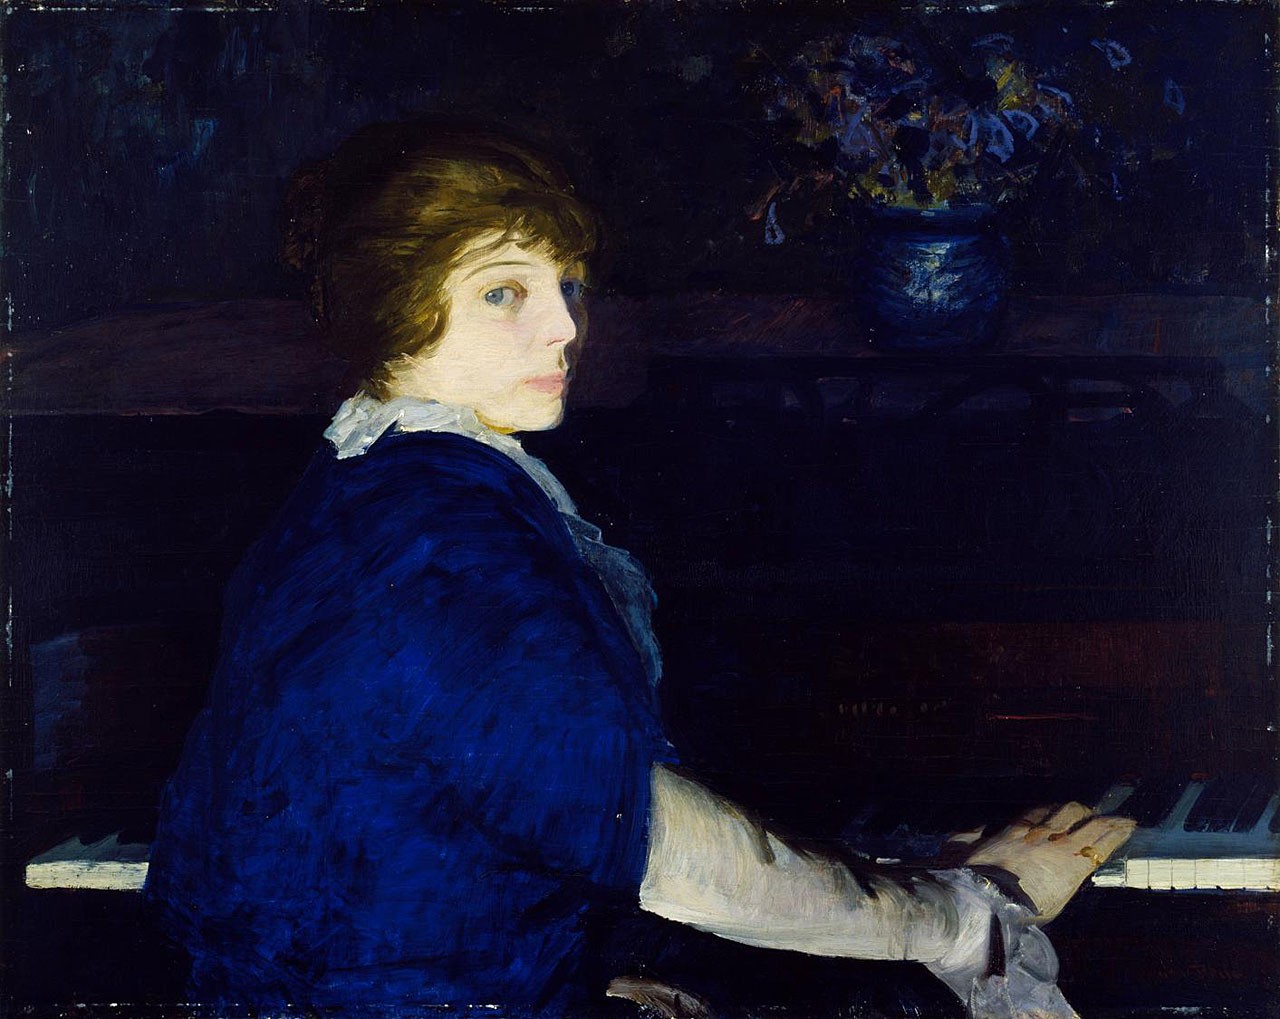  पियानो बजती हुई एमा by George Bellows - 1914 - 73 x 94 सी.मी 